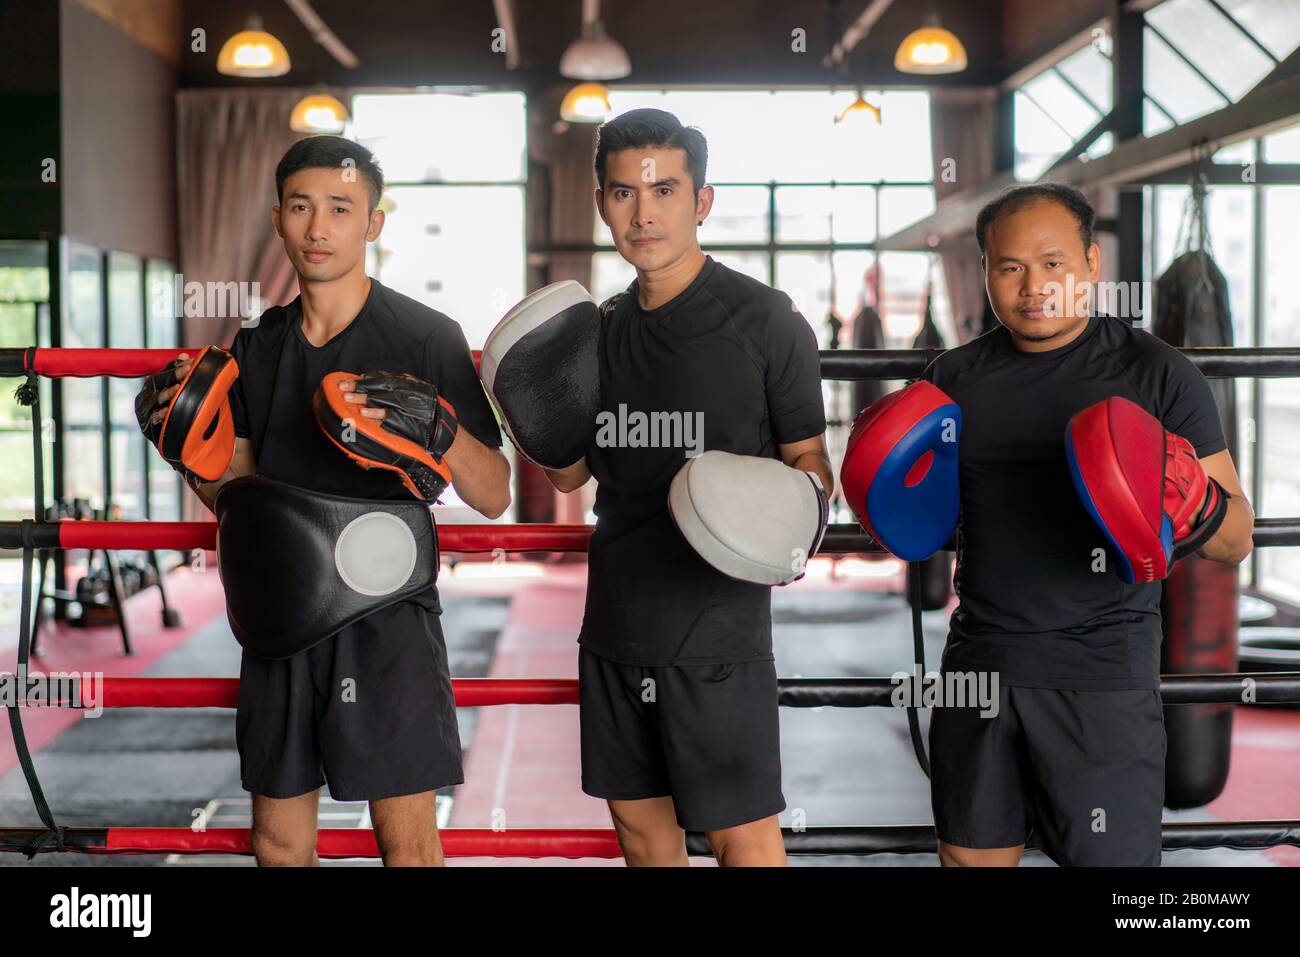 Trois boxeurs asiatiques regardant l'appareil photo et poser et sourire tout en se pencha sur des cordes rouges noires sur l'anneau de boxe, et ont un repos après une formation dure dans le bac Banque D'Images